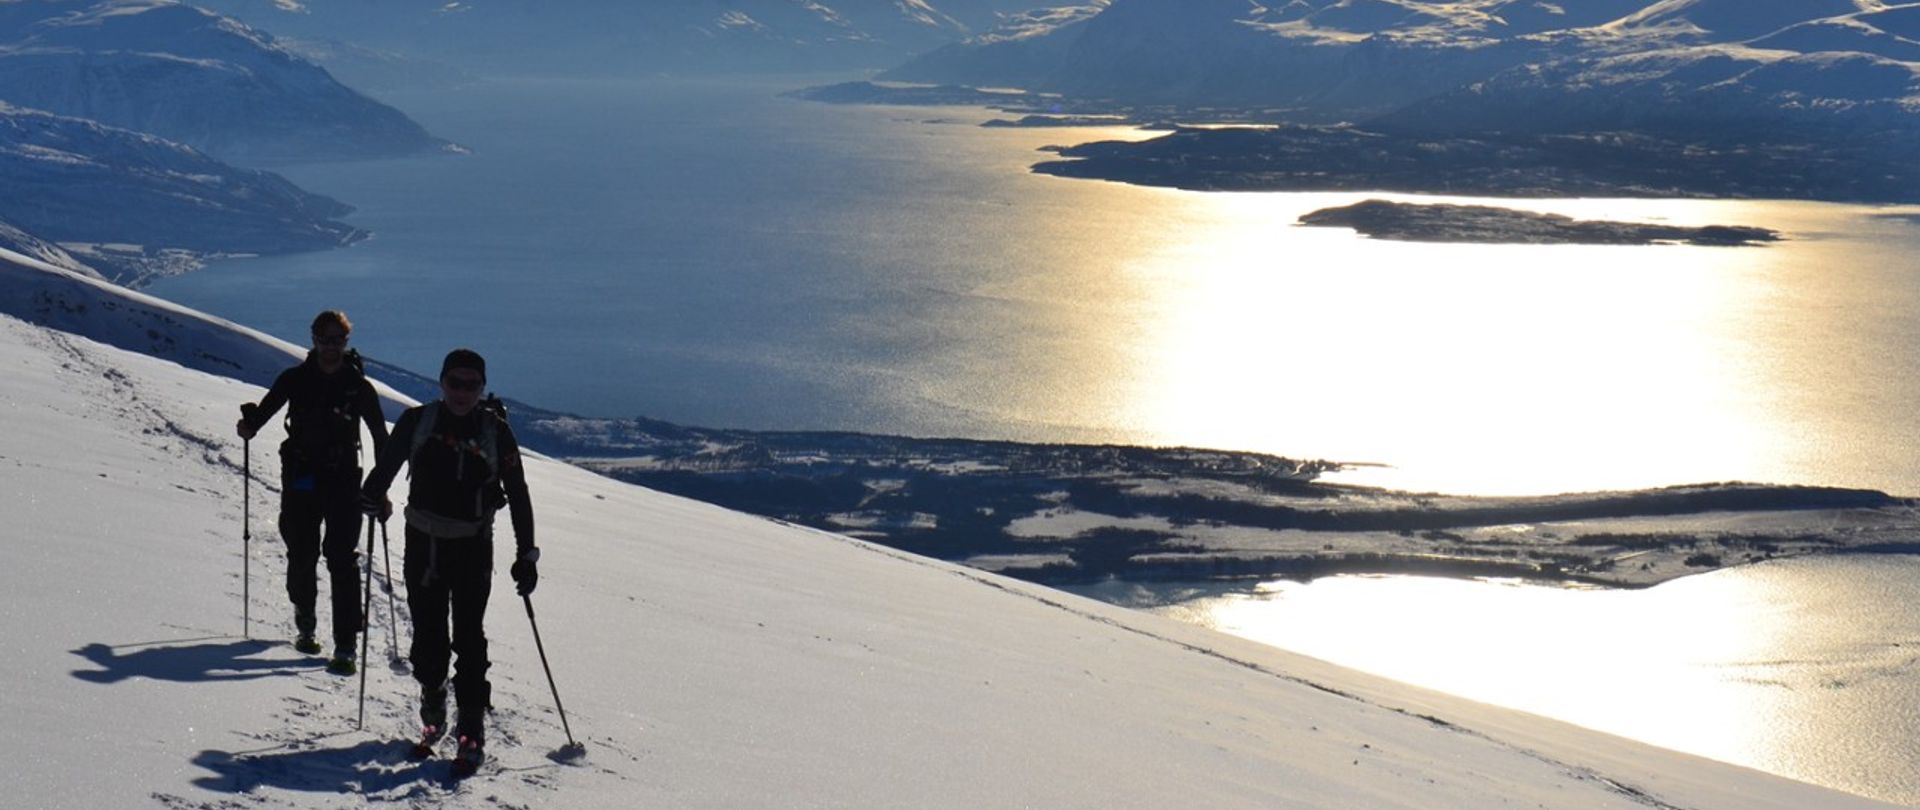 Ski de rando & voile dans les Alpes de Lyngen -1